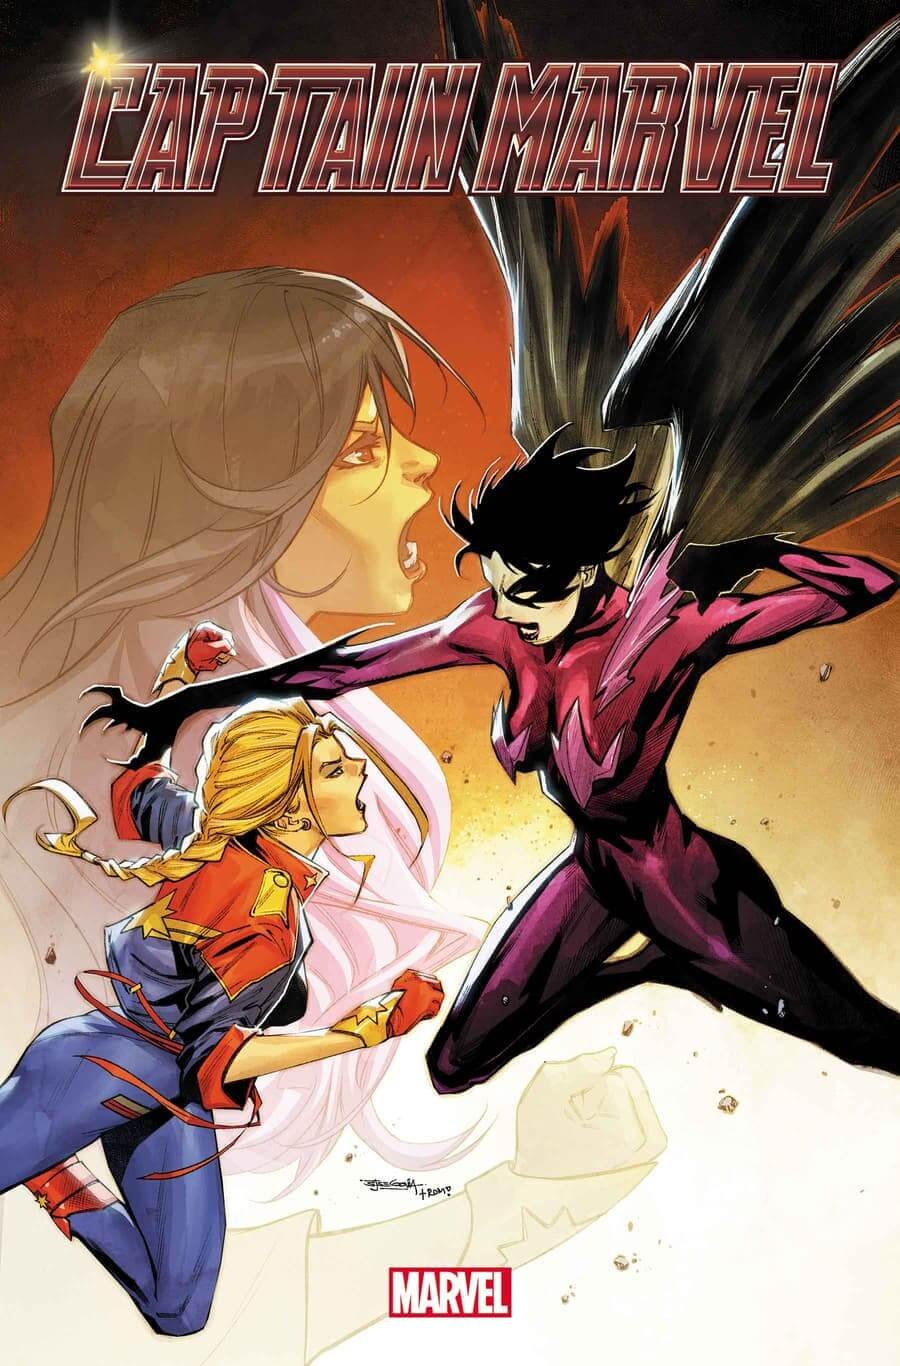 Cover di Captain Marvel 2 di Stephen Segovia, con lo scontro tra Carol e Omen